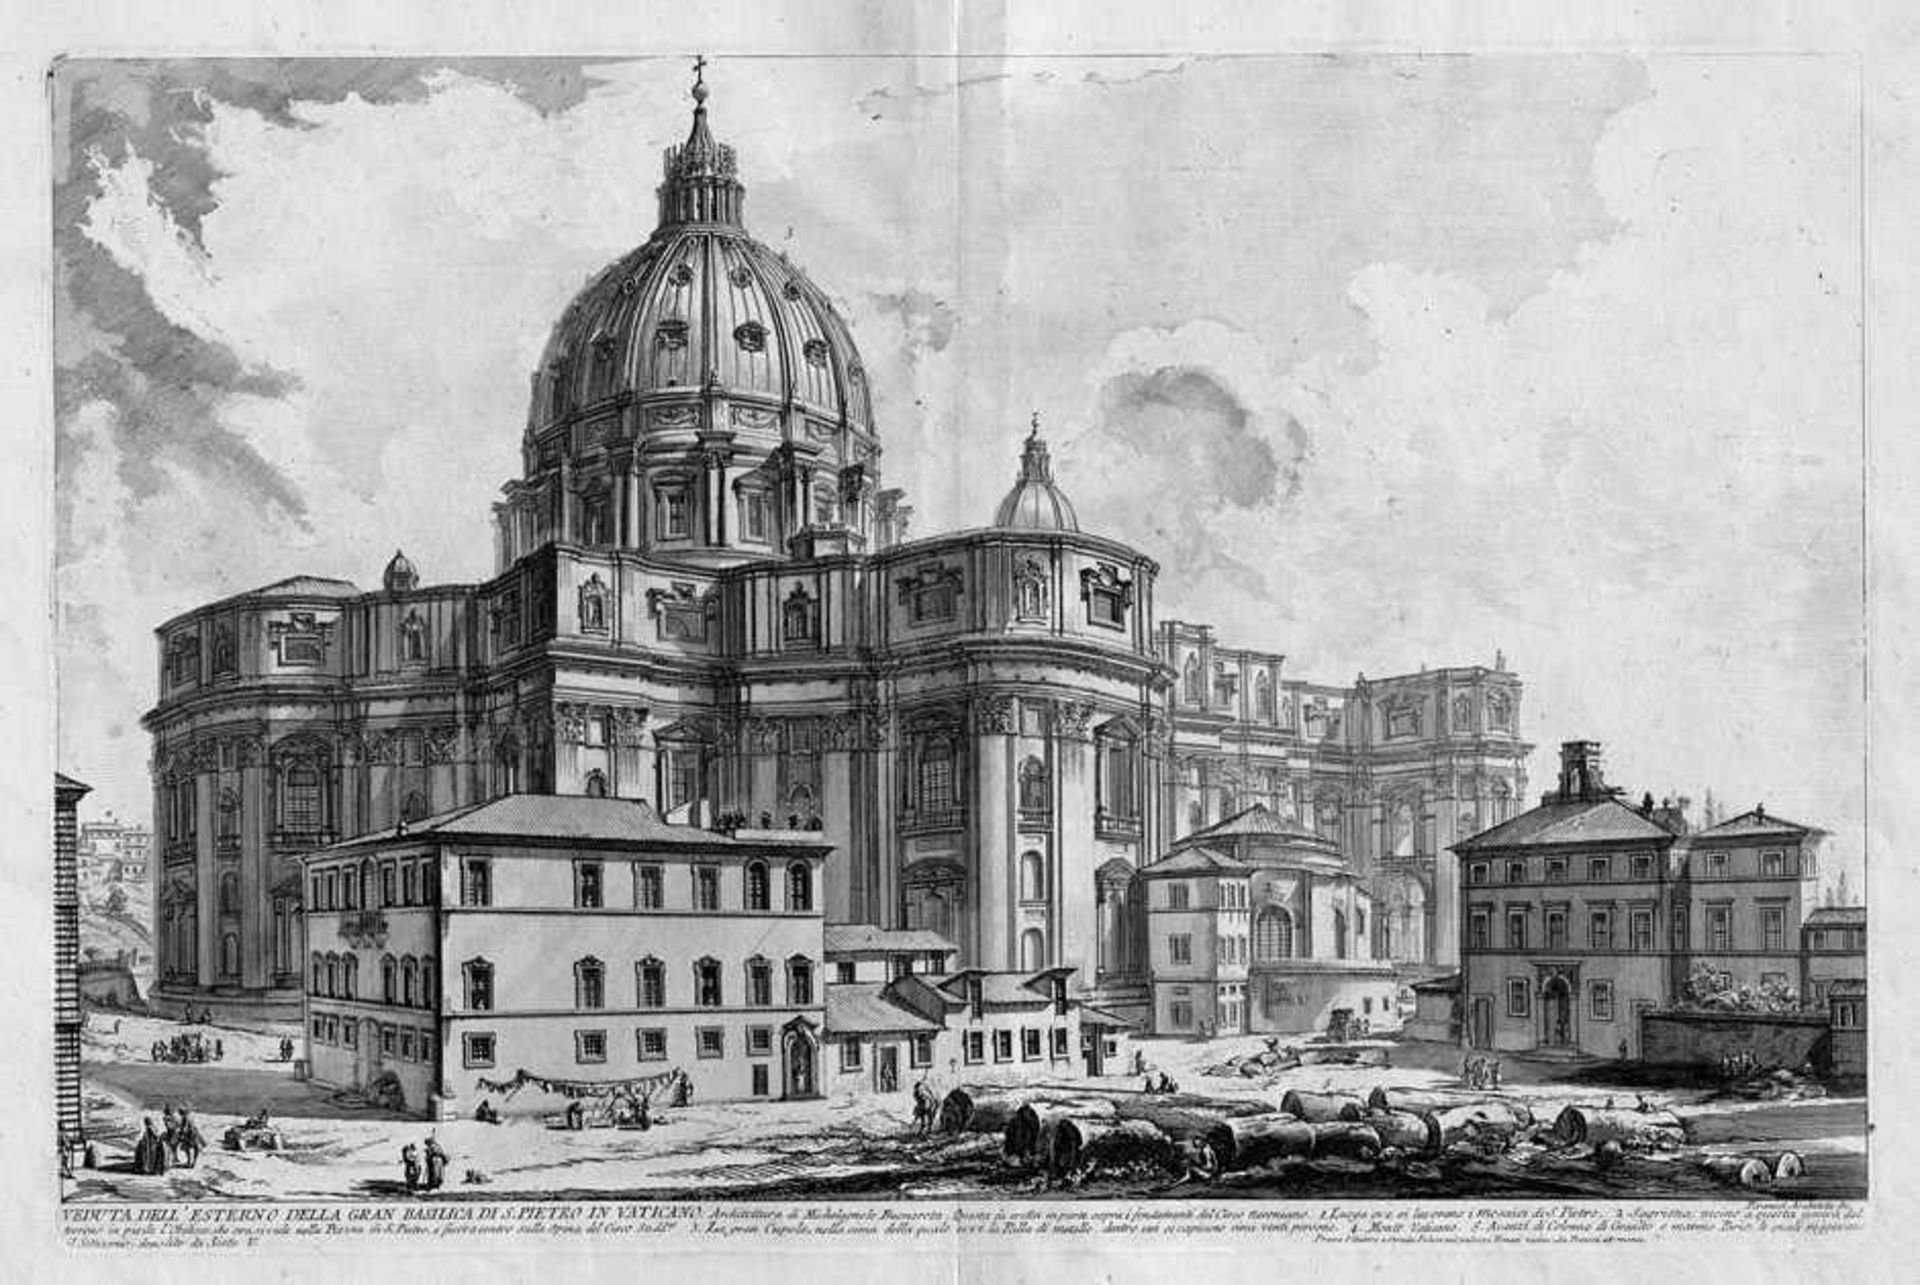 Piranesi, Giovanni Battista: Veduta dell' Esterno della gran Basilica di S. Pietro in Vaticano